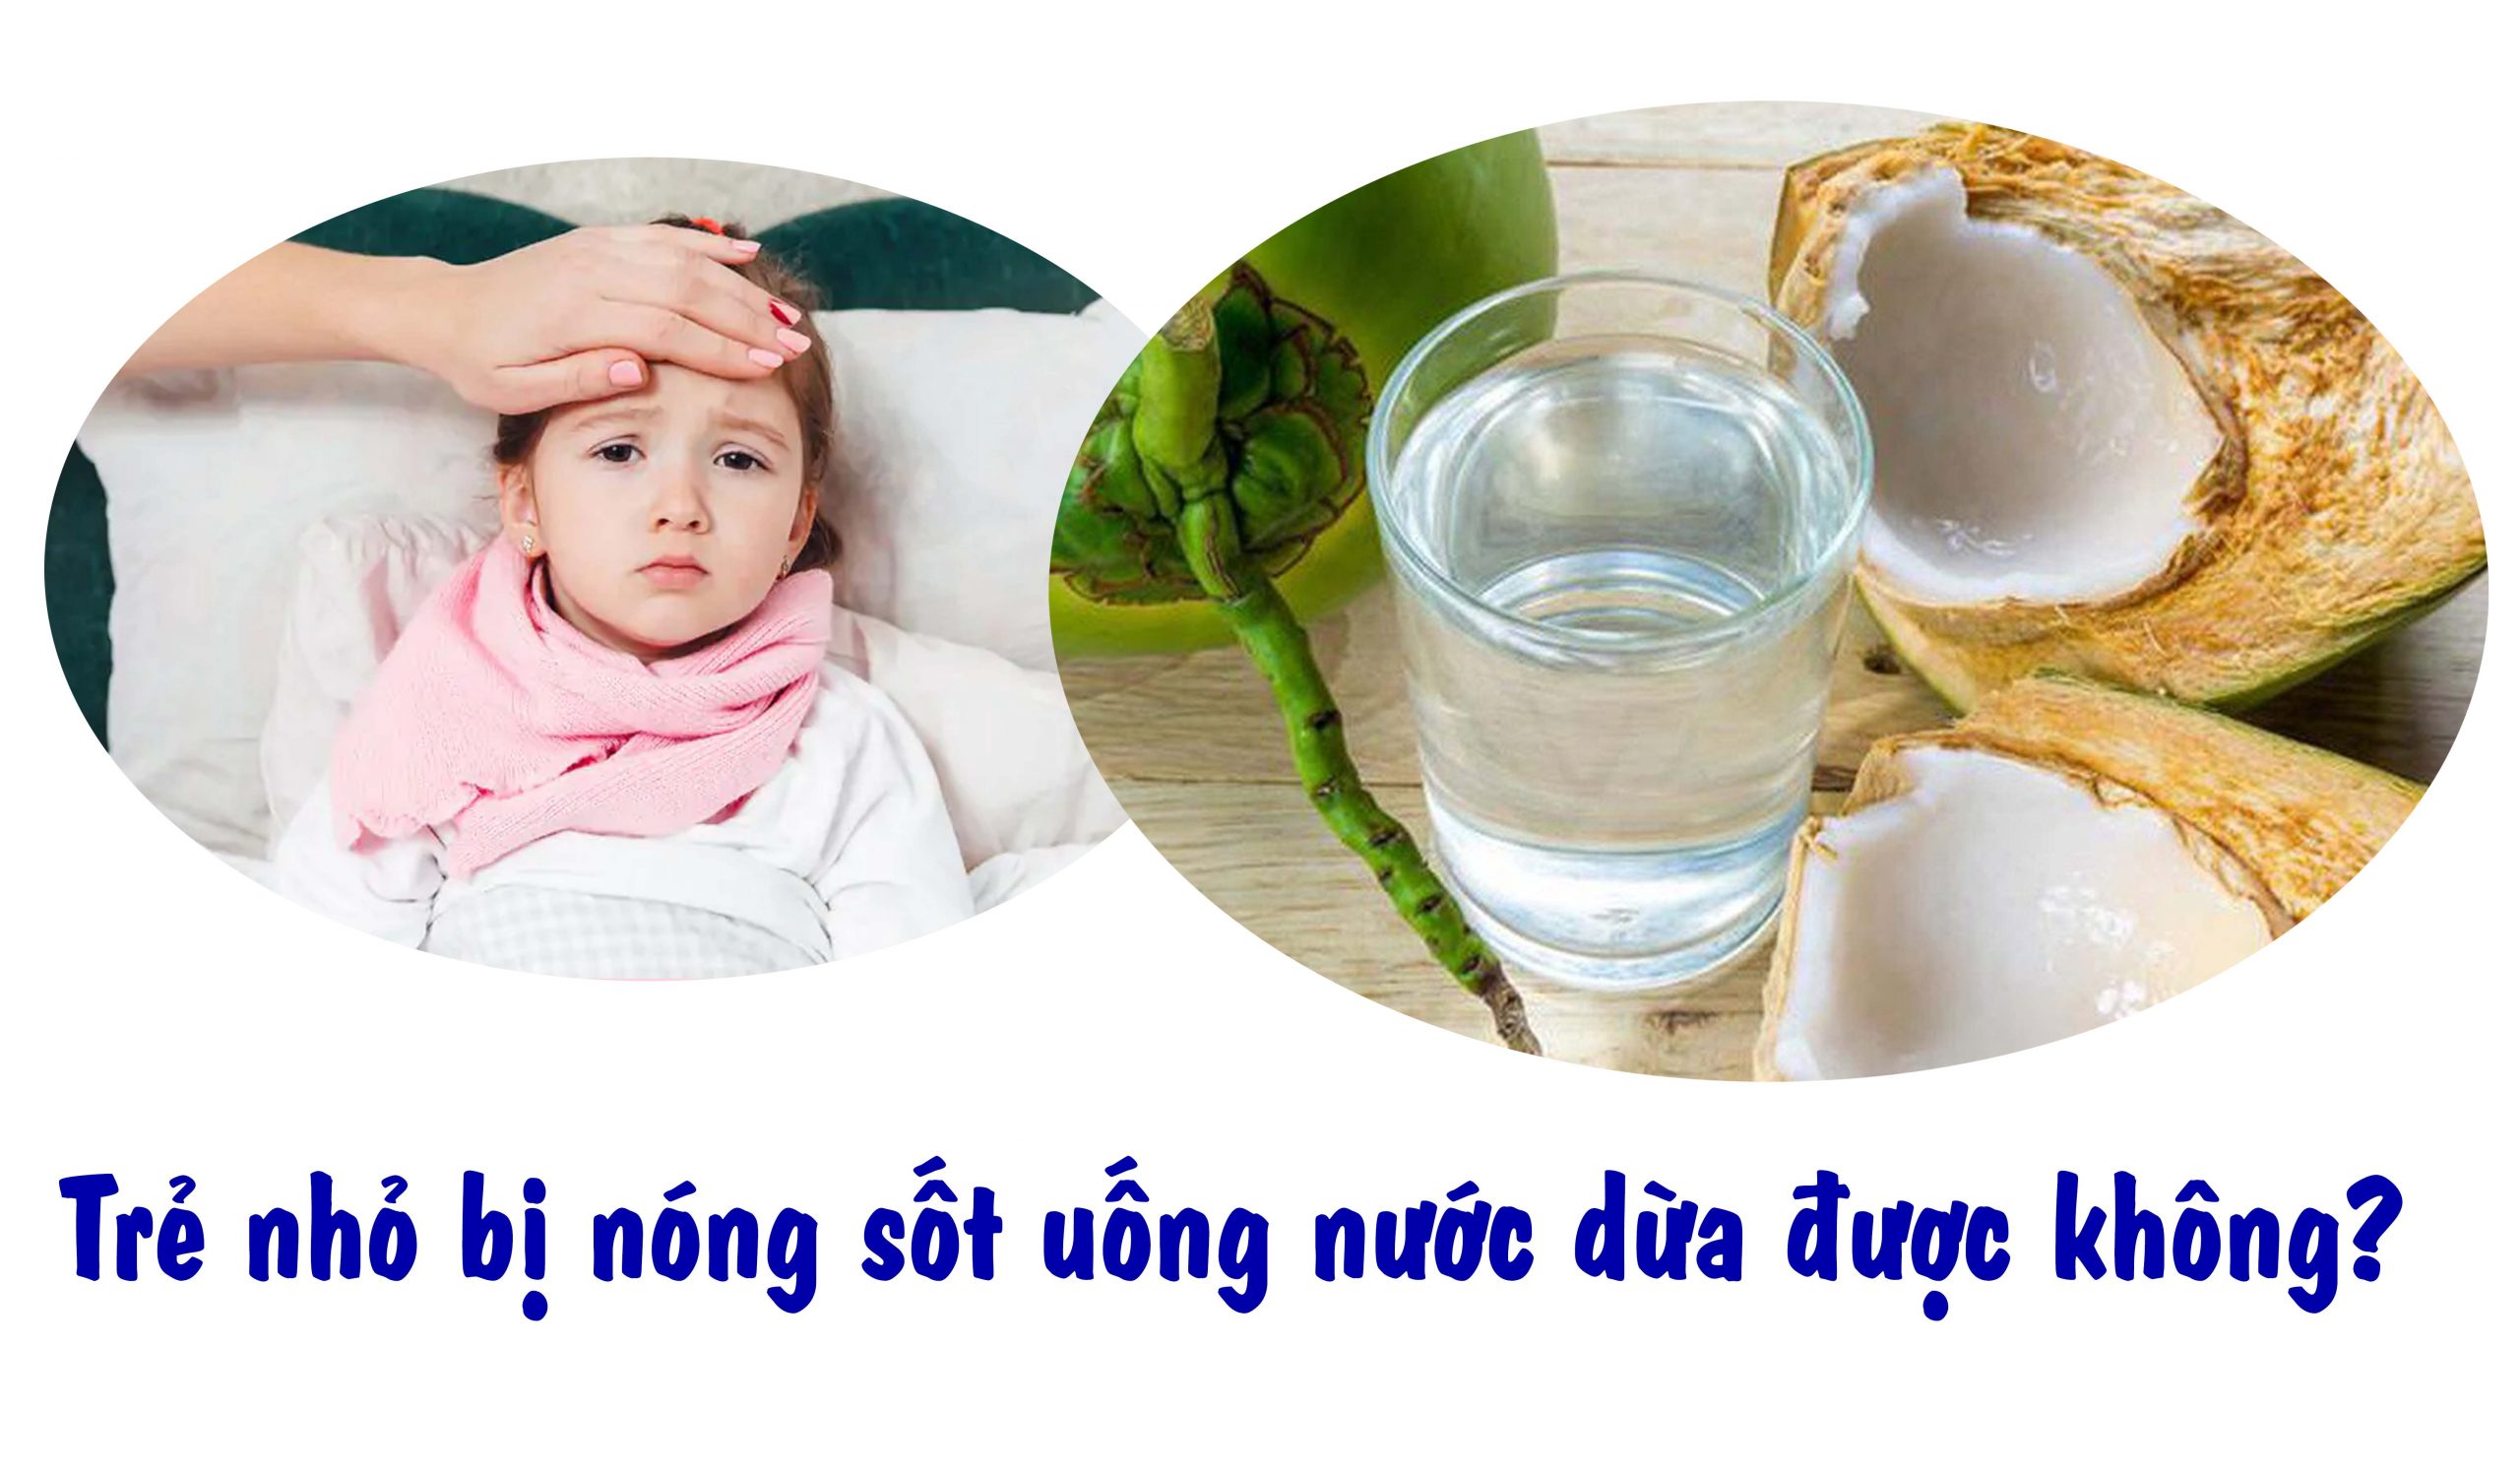 Trẻ nhỏ bị nóng sốt uống nước dừa được không?